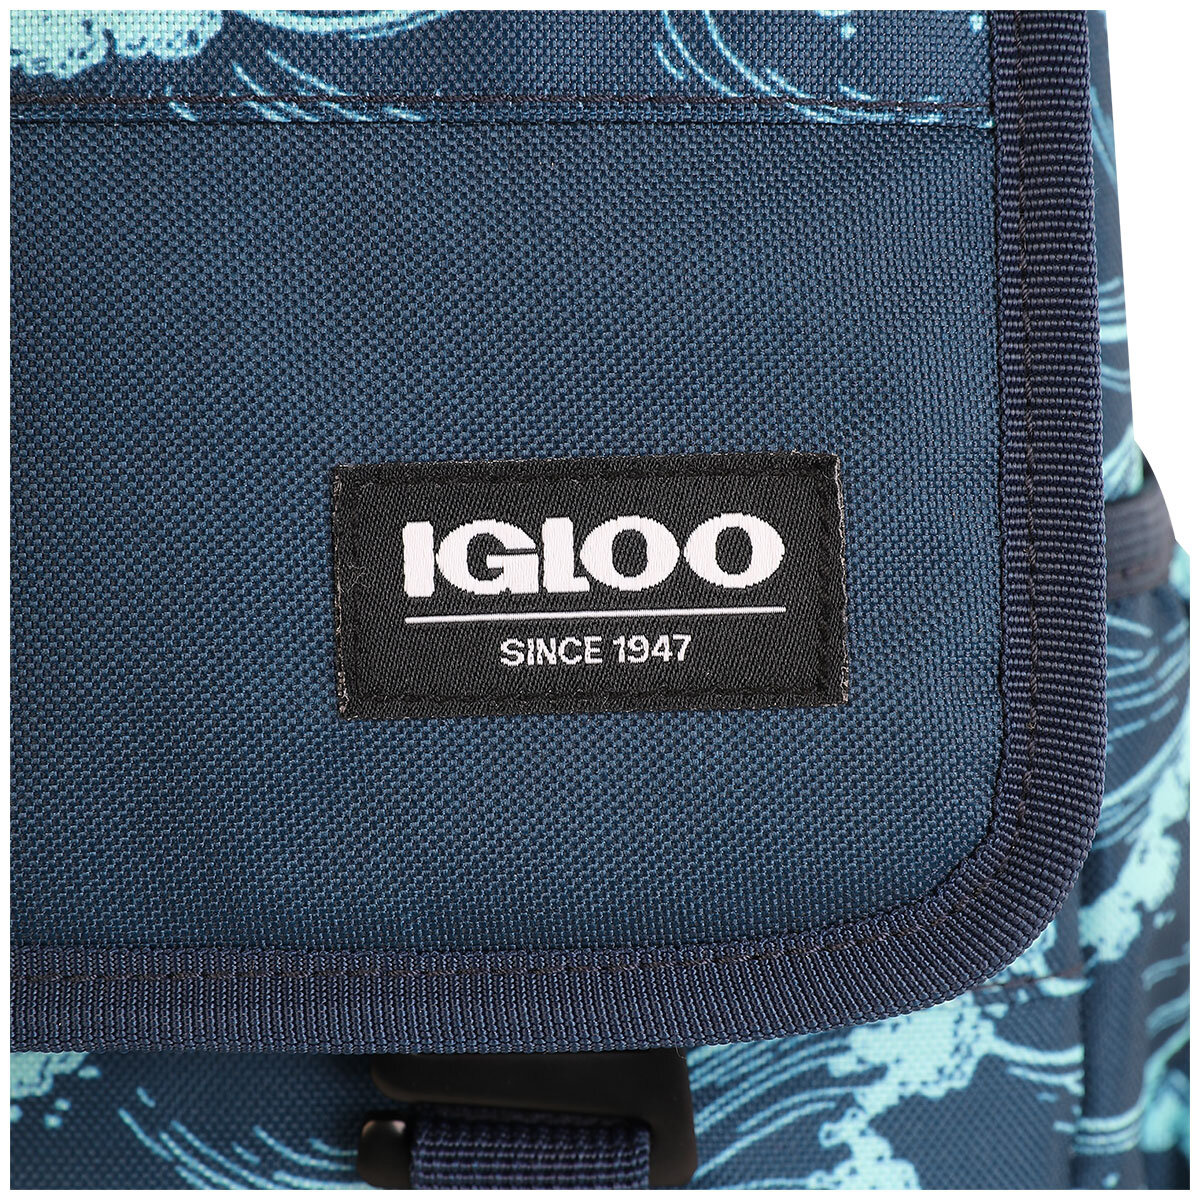 Igloo Daytripper Backpack